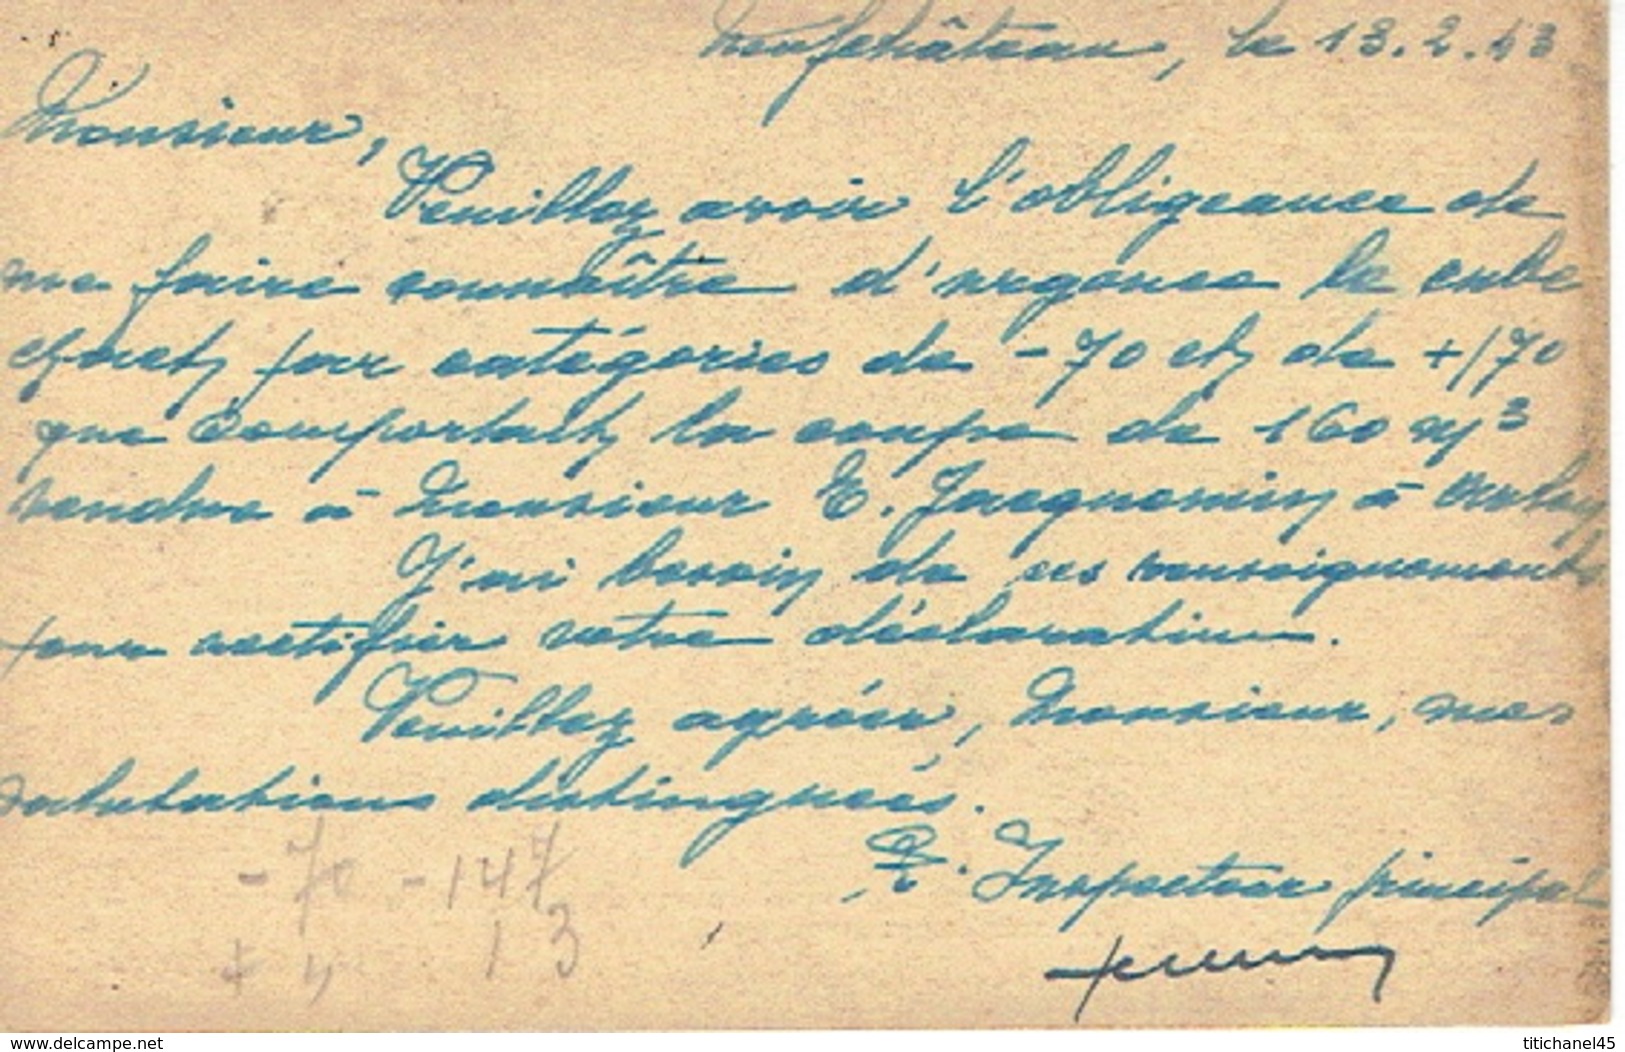 1943 Carte De Service - MINISTERE DE L'AGRICULTURE - INSPECTION FORESTIERE DE NEUFCHATEAU Vers LEGLISE - Franchigia